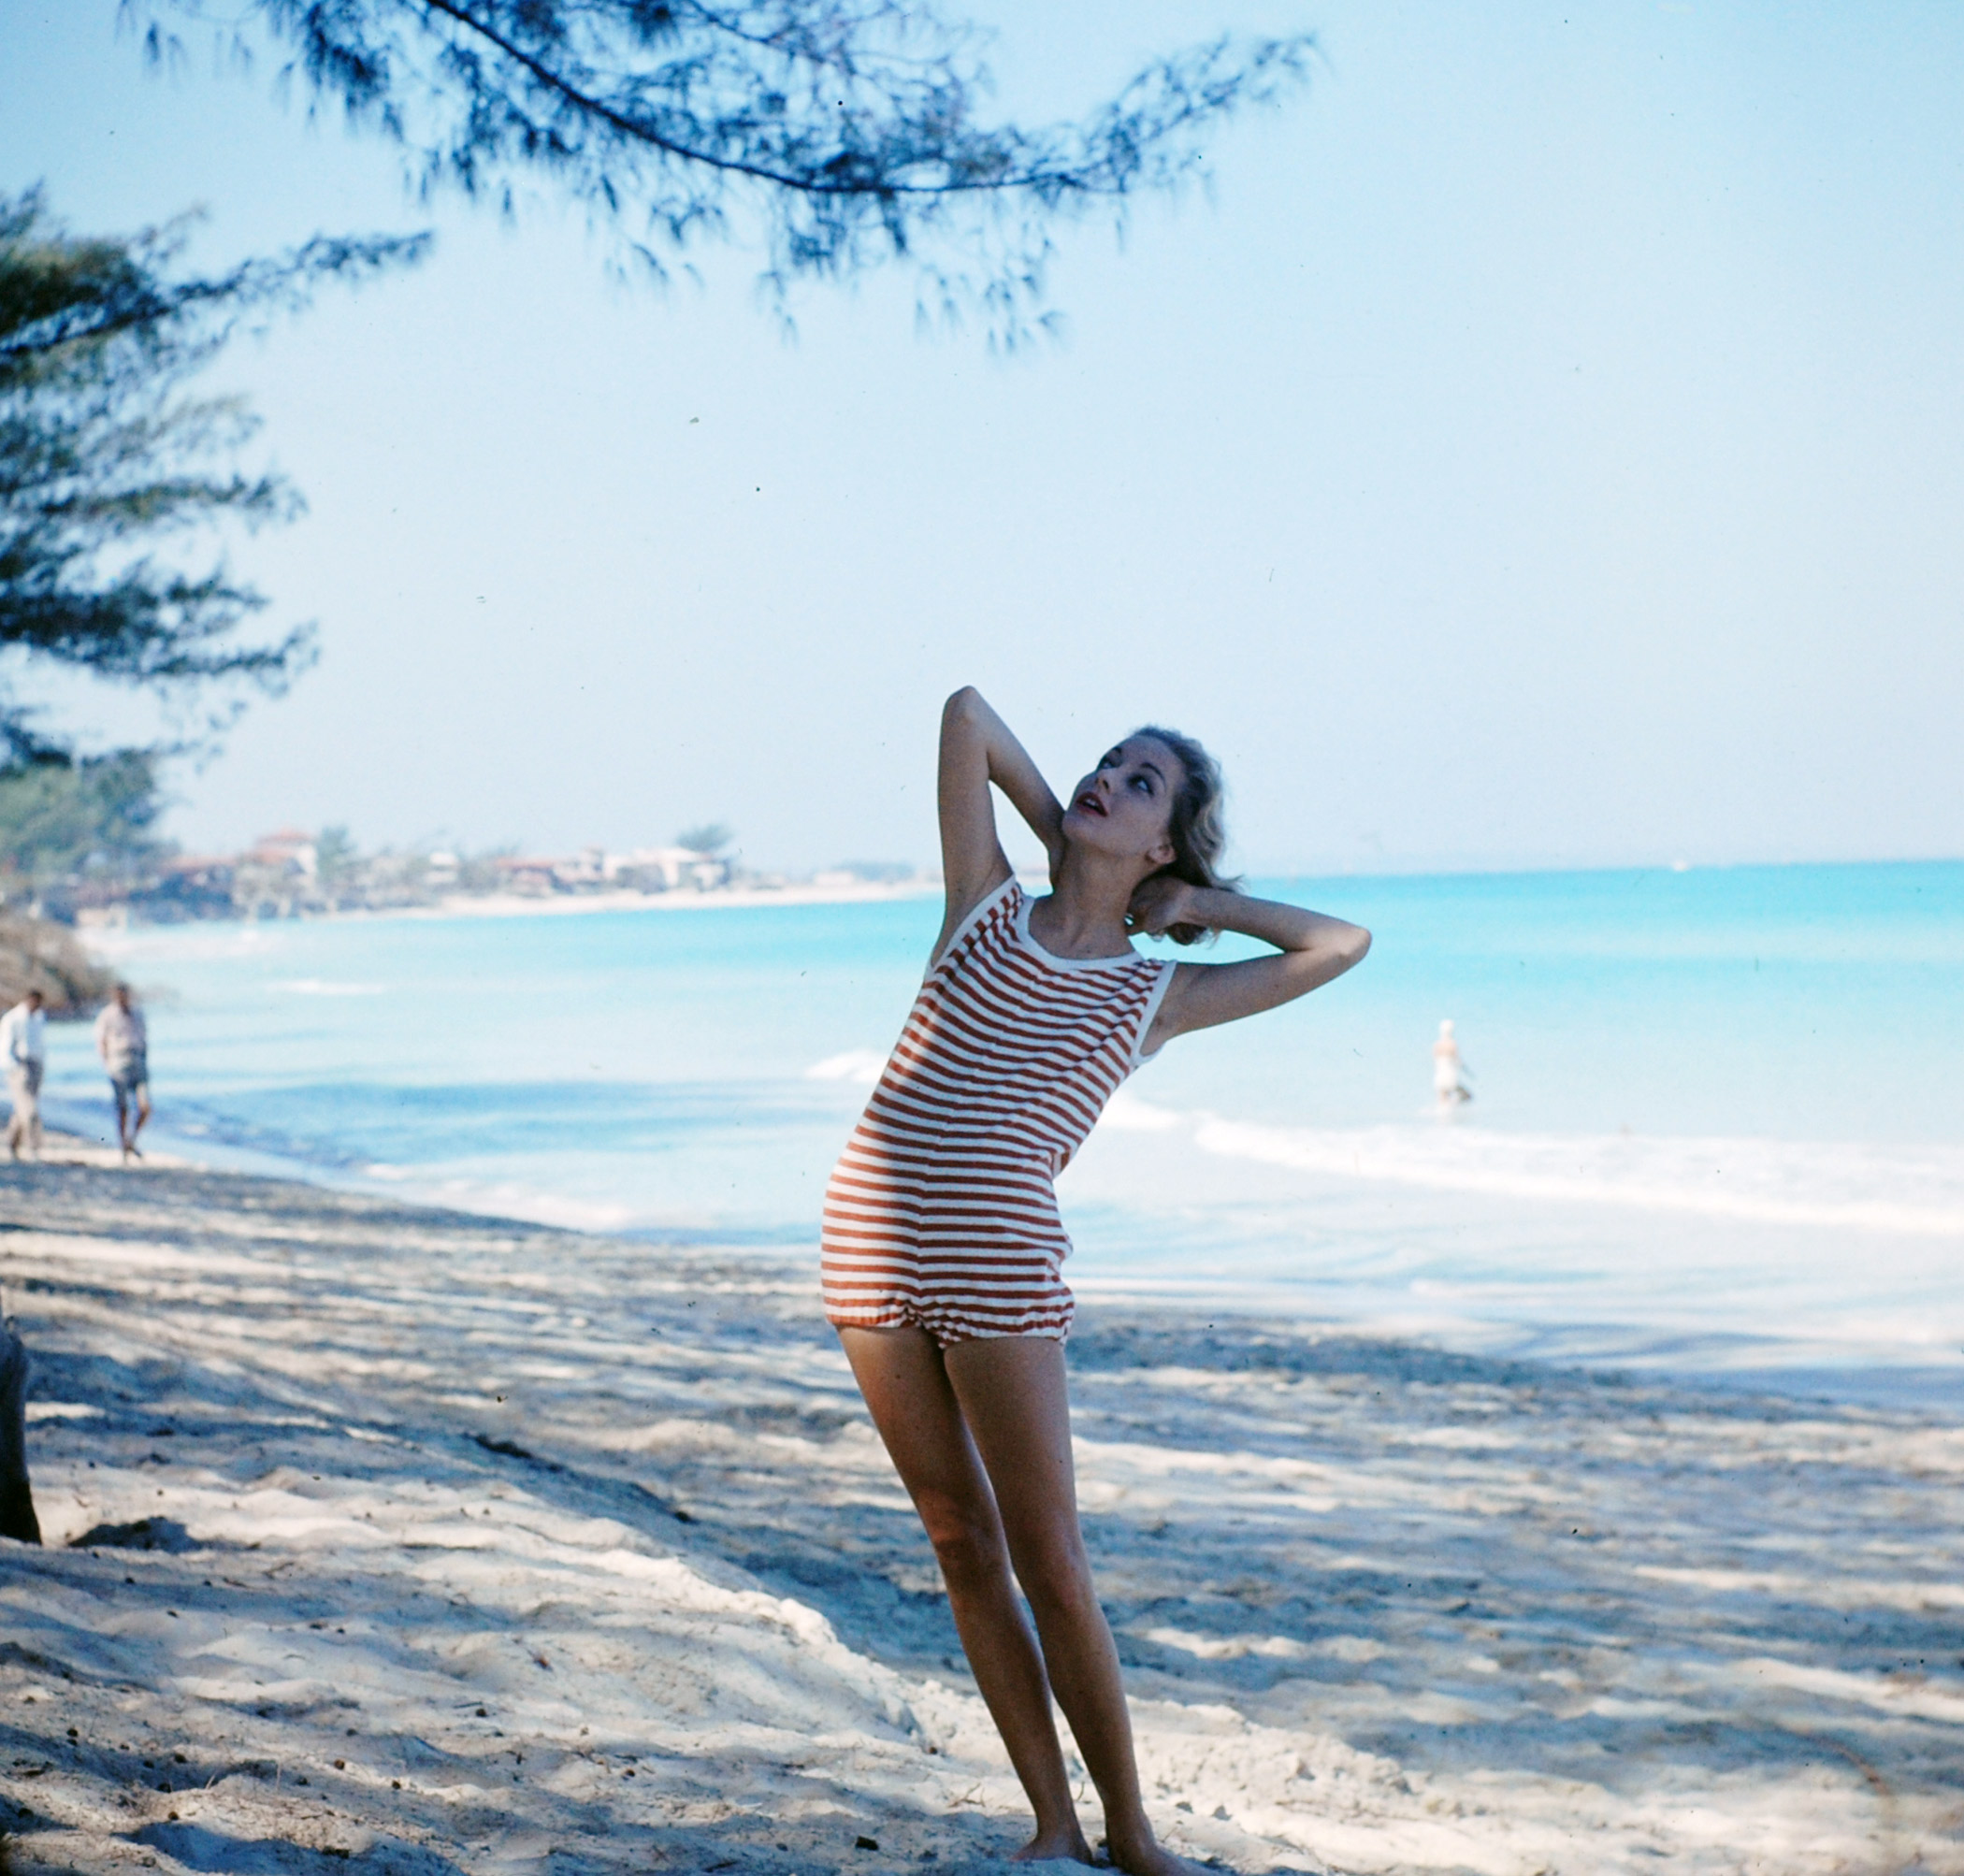 1958 swimwear fashion in Cuba.